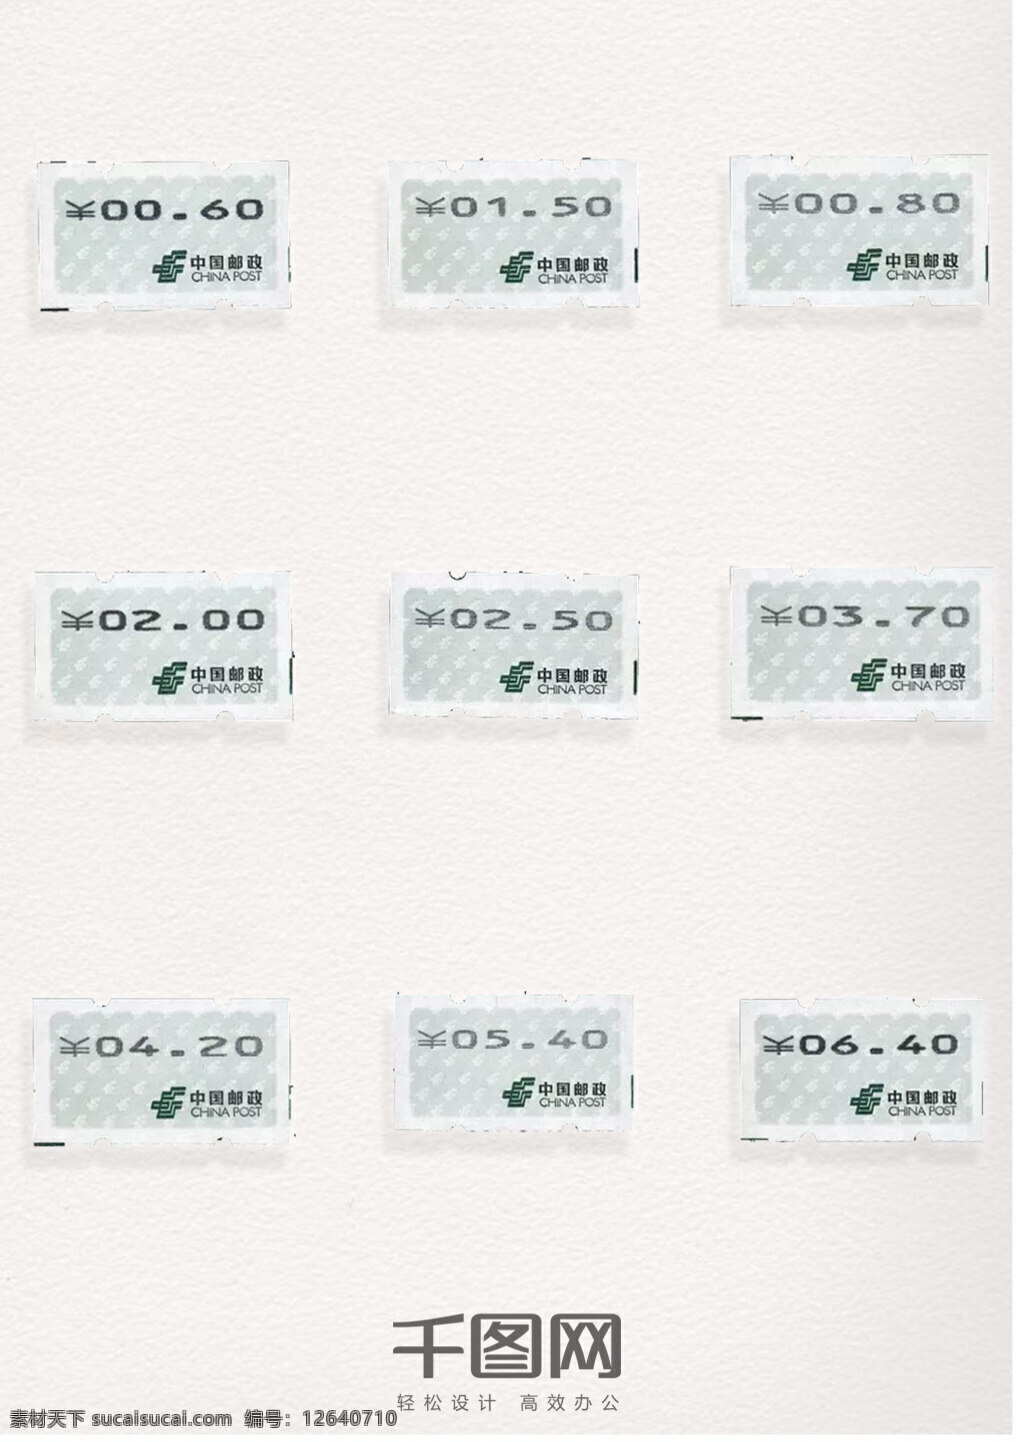 价格 图案 邮票 元素 装饰 价格邮票 价格图案 中国邮政 邮票元素 邮票图案 邮票装饰元素 彩色邮票